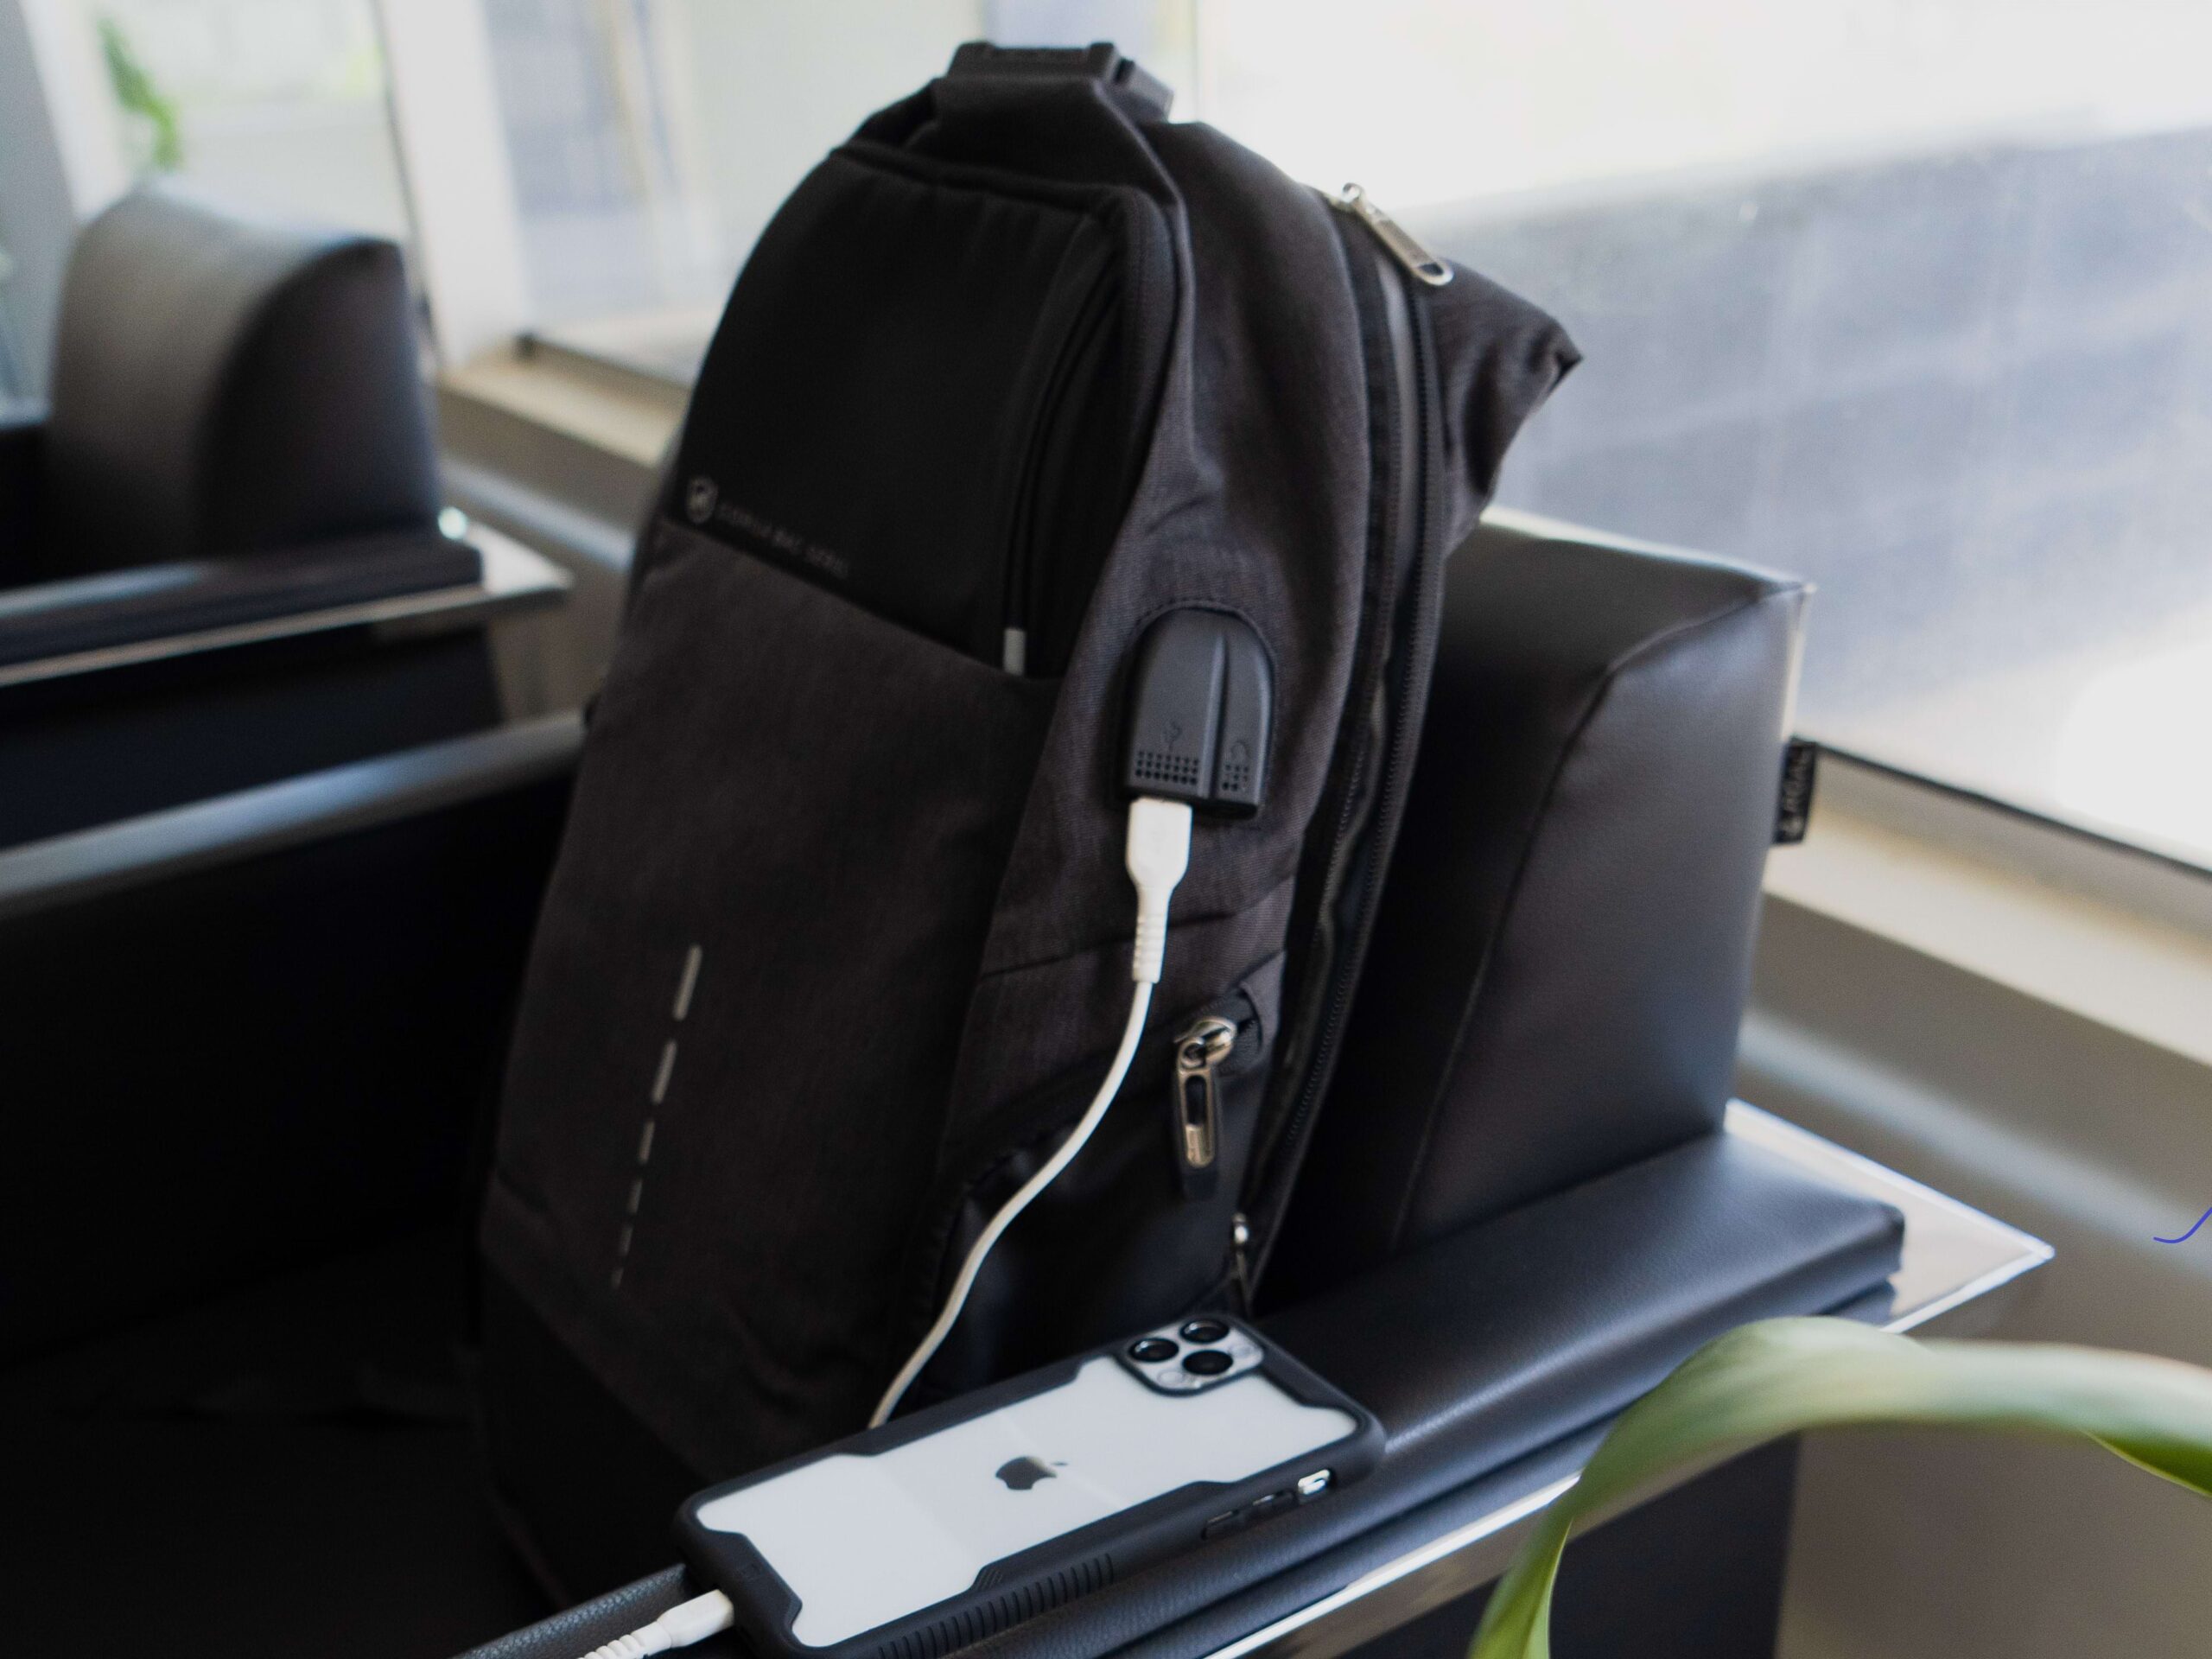 Mochila antifurto da GShield em cima de cadeira no aeroporto ao lado de iPhone branco com capa preta e transparente